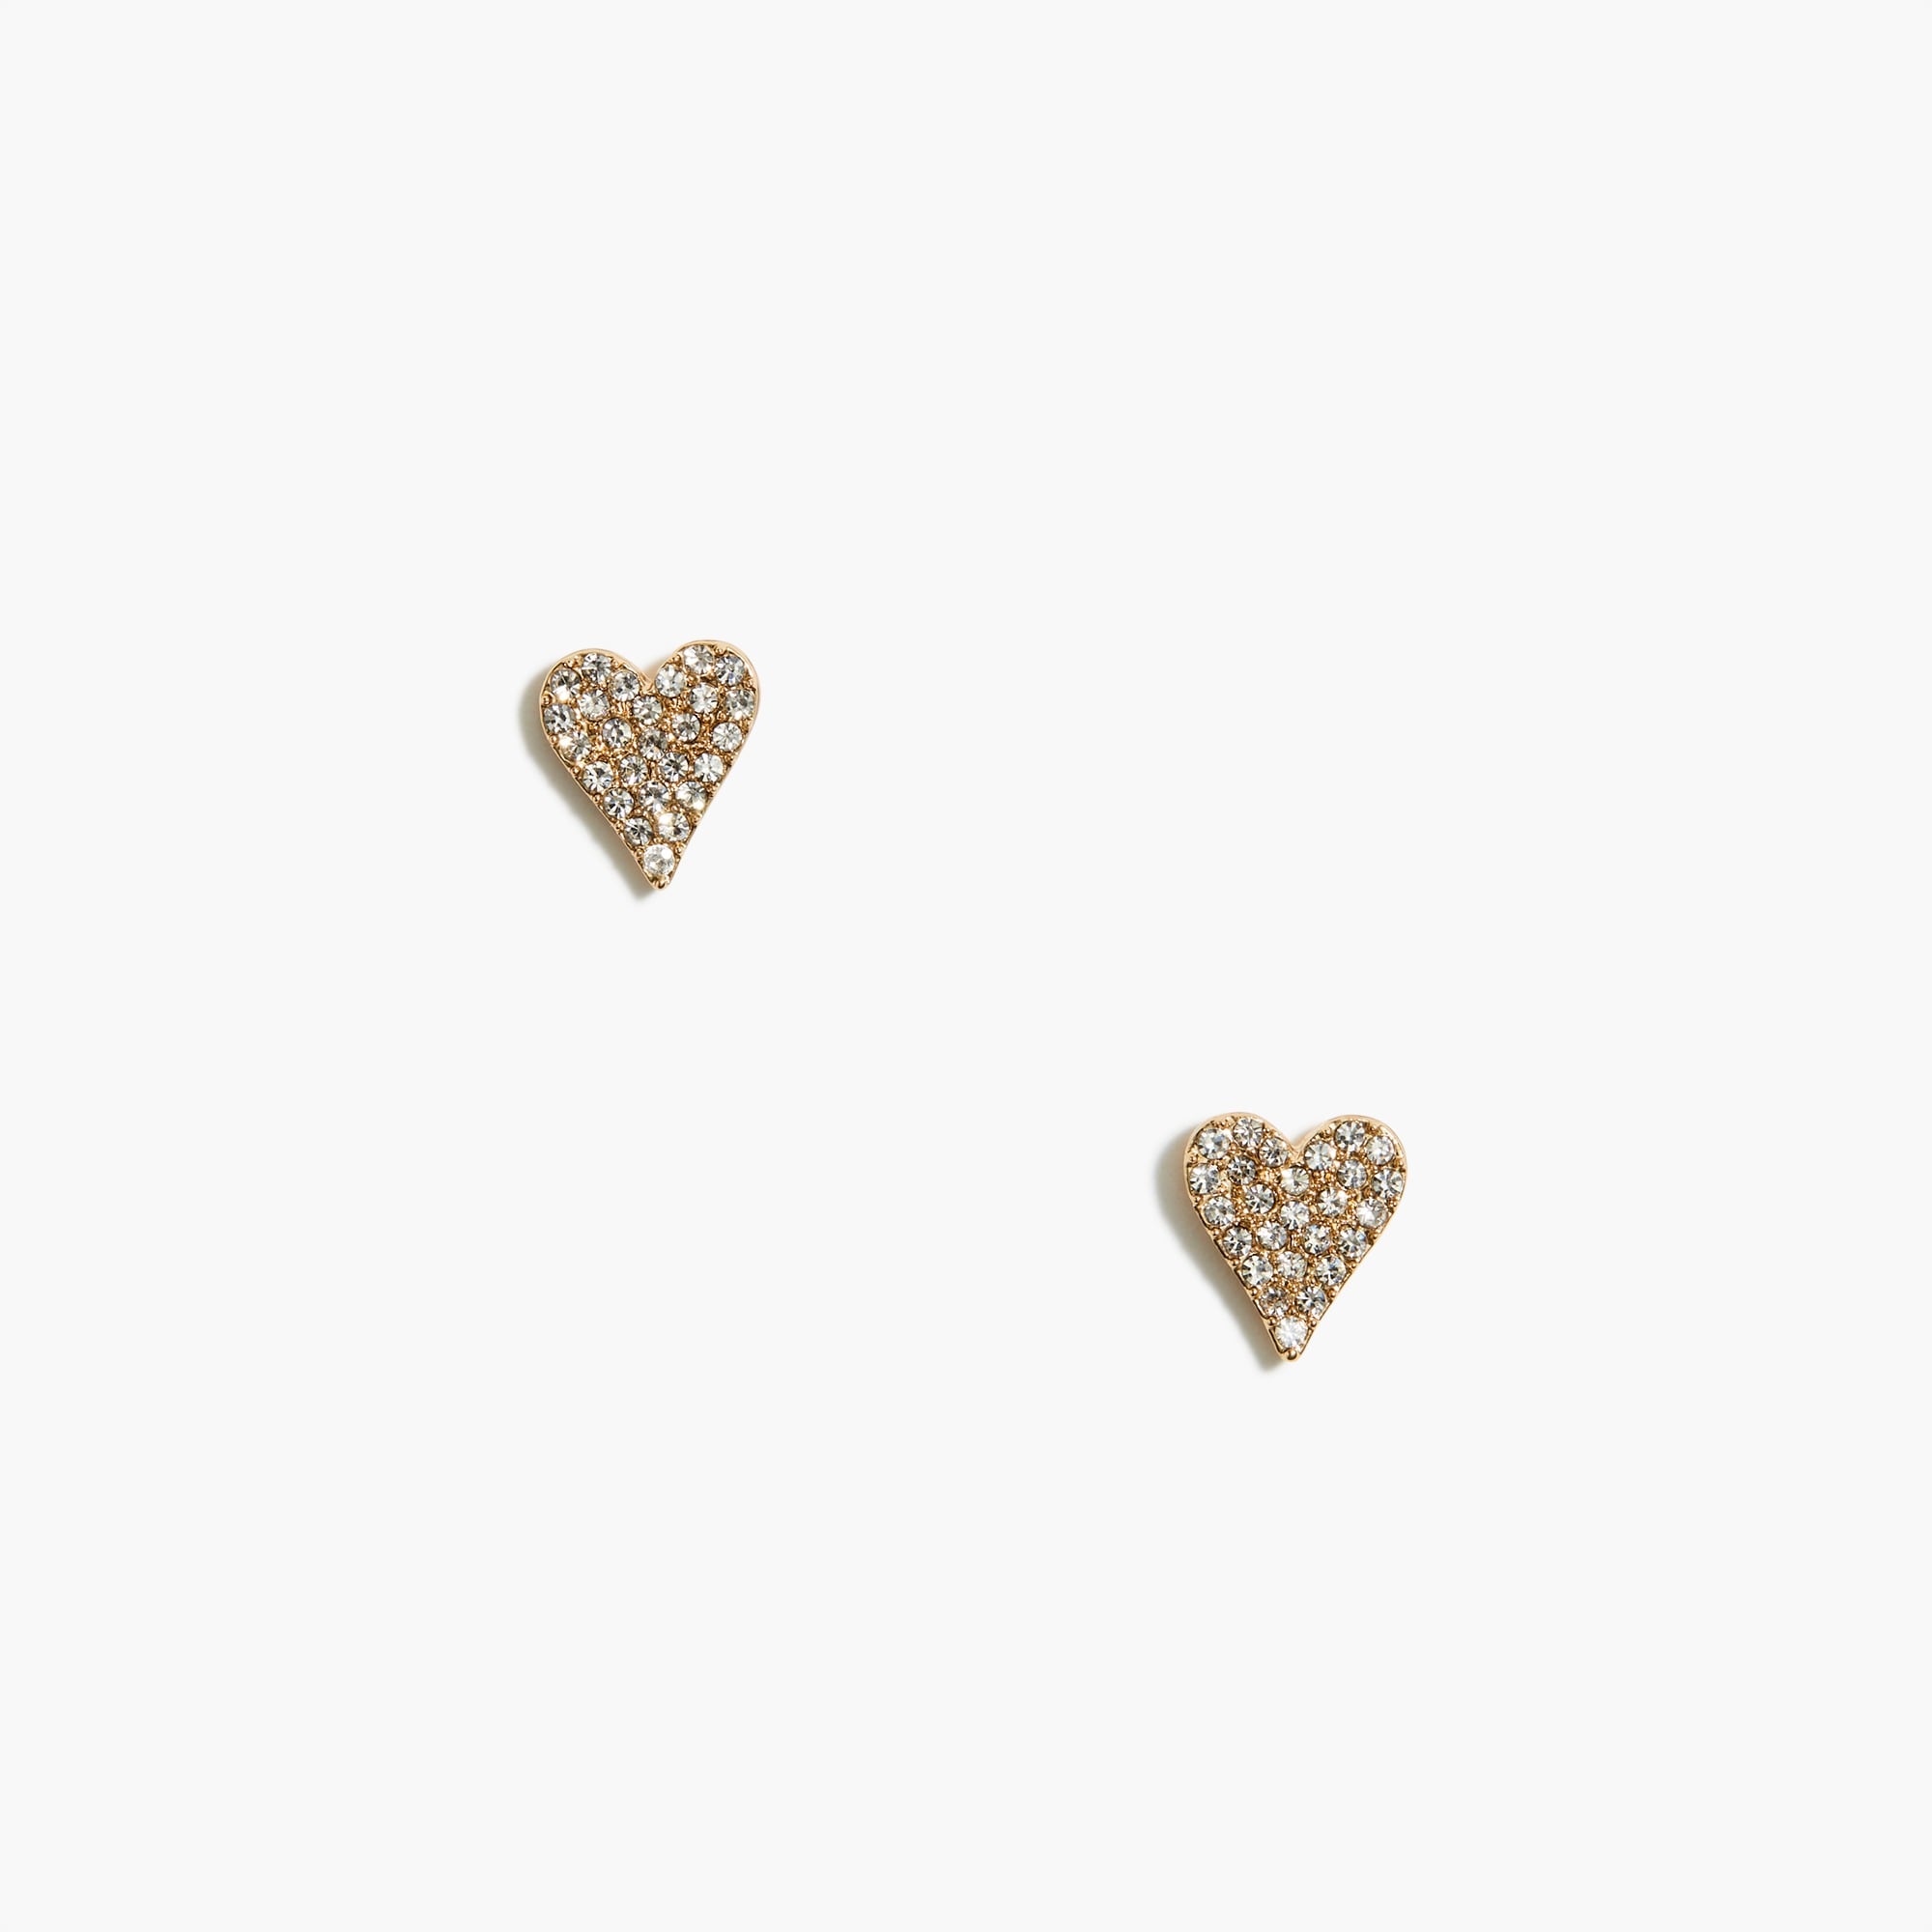 Pavé crystal heart stud earrings